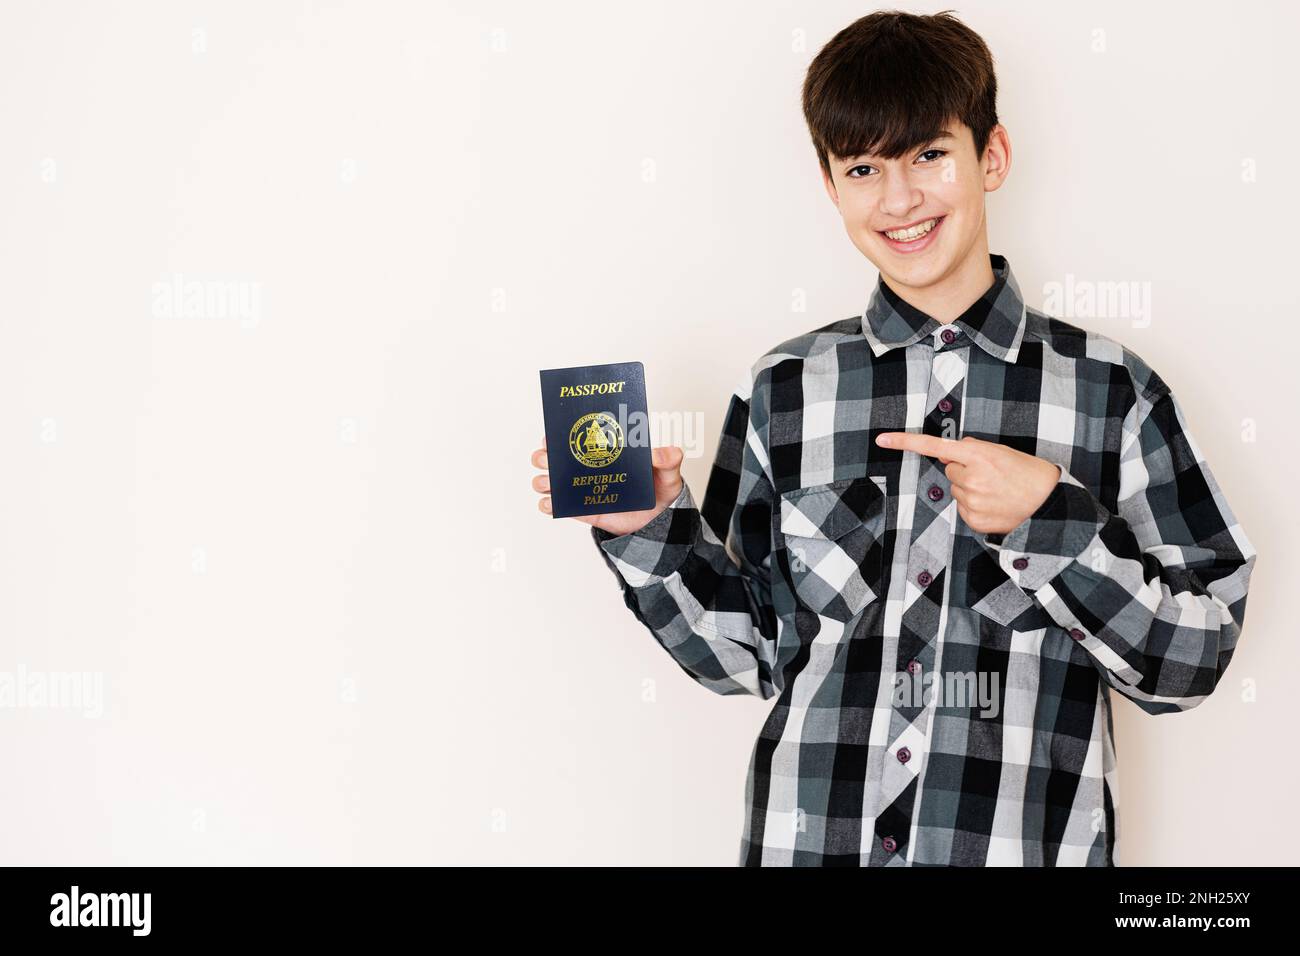 Muchacho adolescente joven que sostiene el pasaporte de Palau que se ve positivo y feliz de pie y sonriendo con una sonrisa confiada contra el fondo blanco. Foto de stock